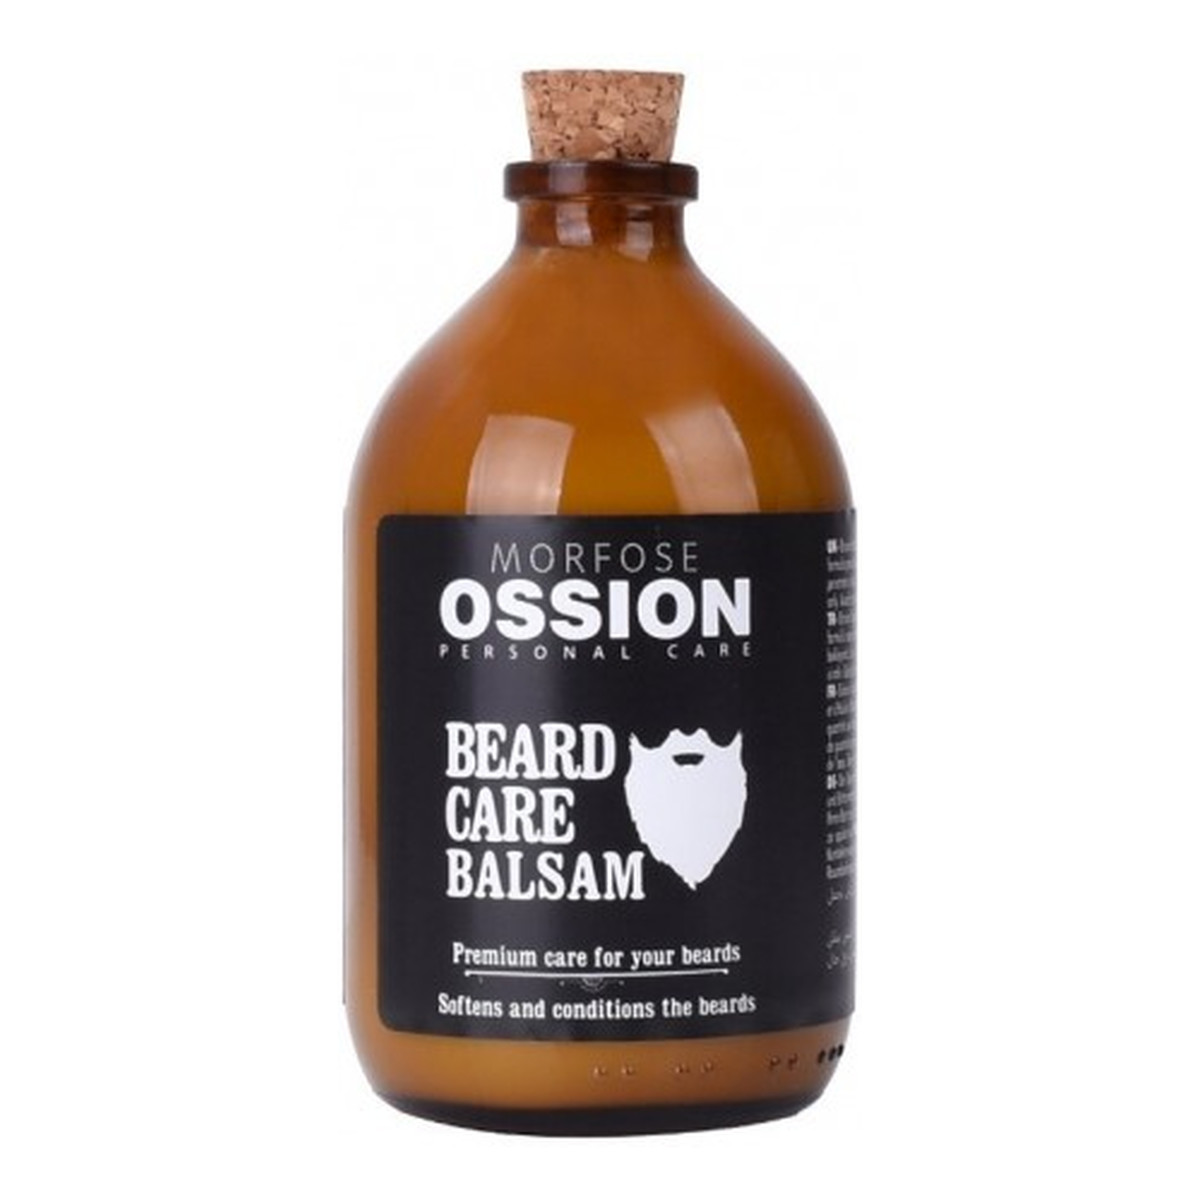 Morfose Beard Care Balsam odżywka do pielęgnacji brody 100ml